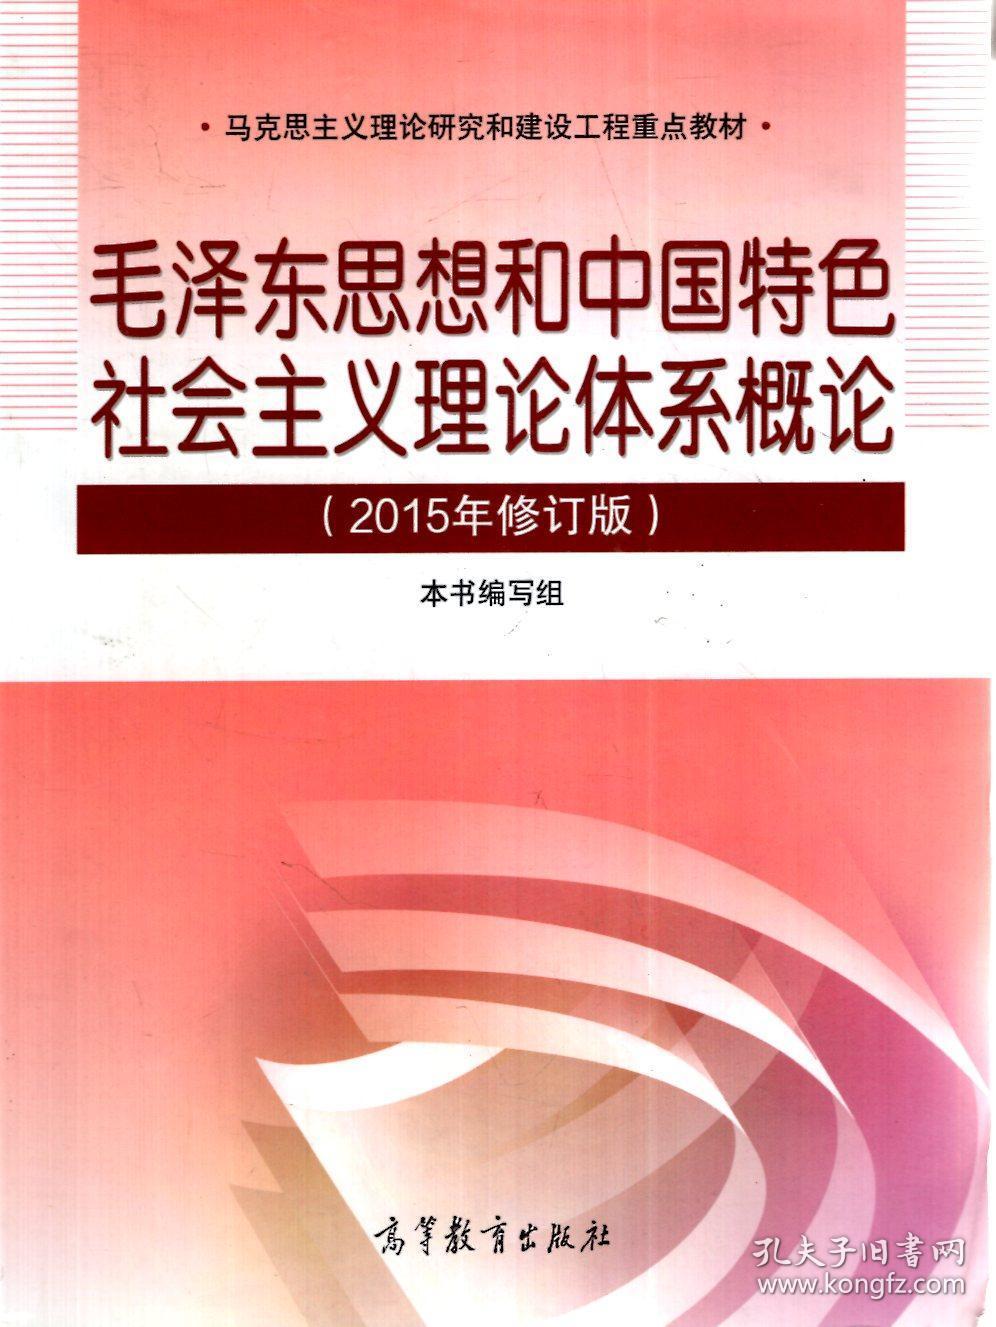 马克思主义理论研究和建设工程重点教材.毛泽东思想和中国特色社会主义理论体系概论、思想道德修养与法律基础、中国近现代史纲要（2015年修订版）.3册合售